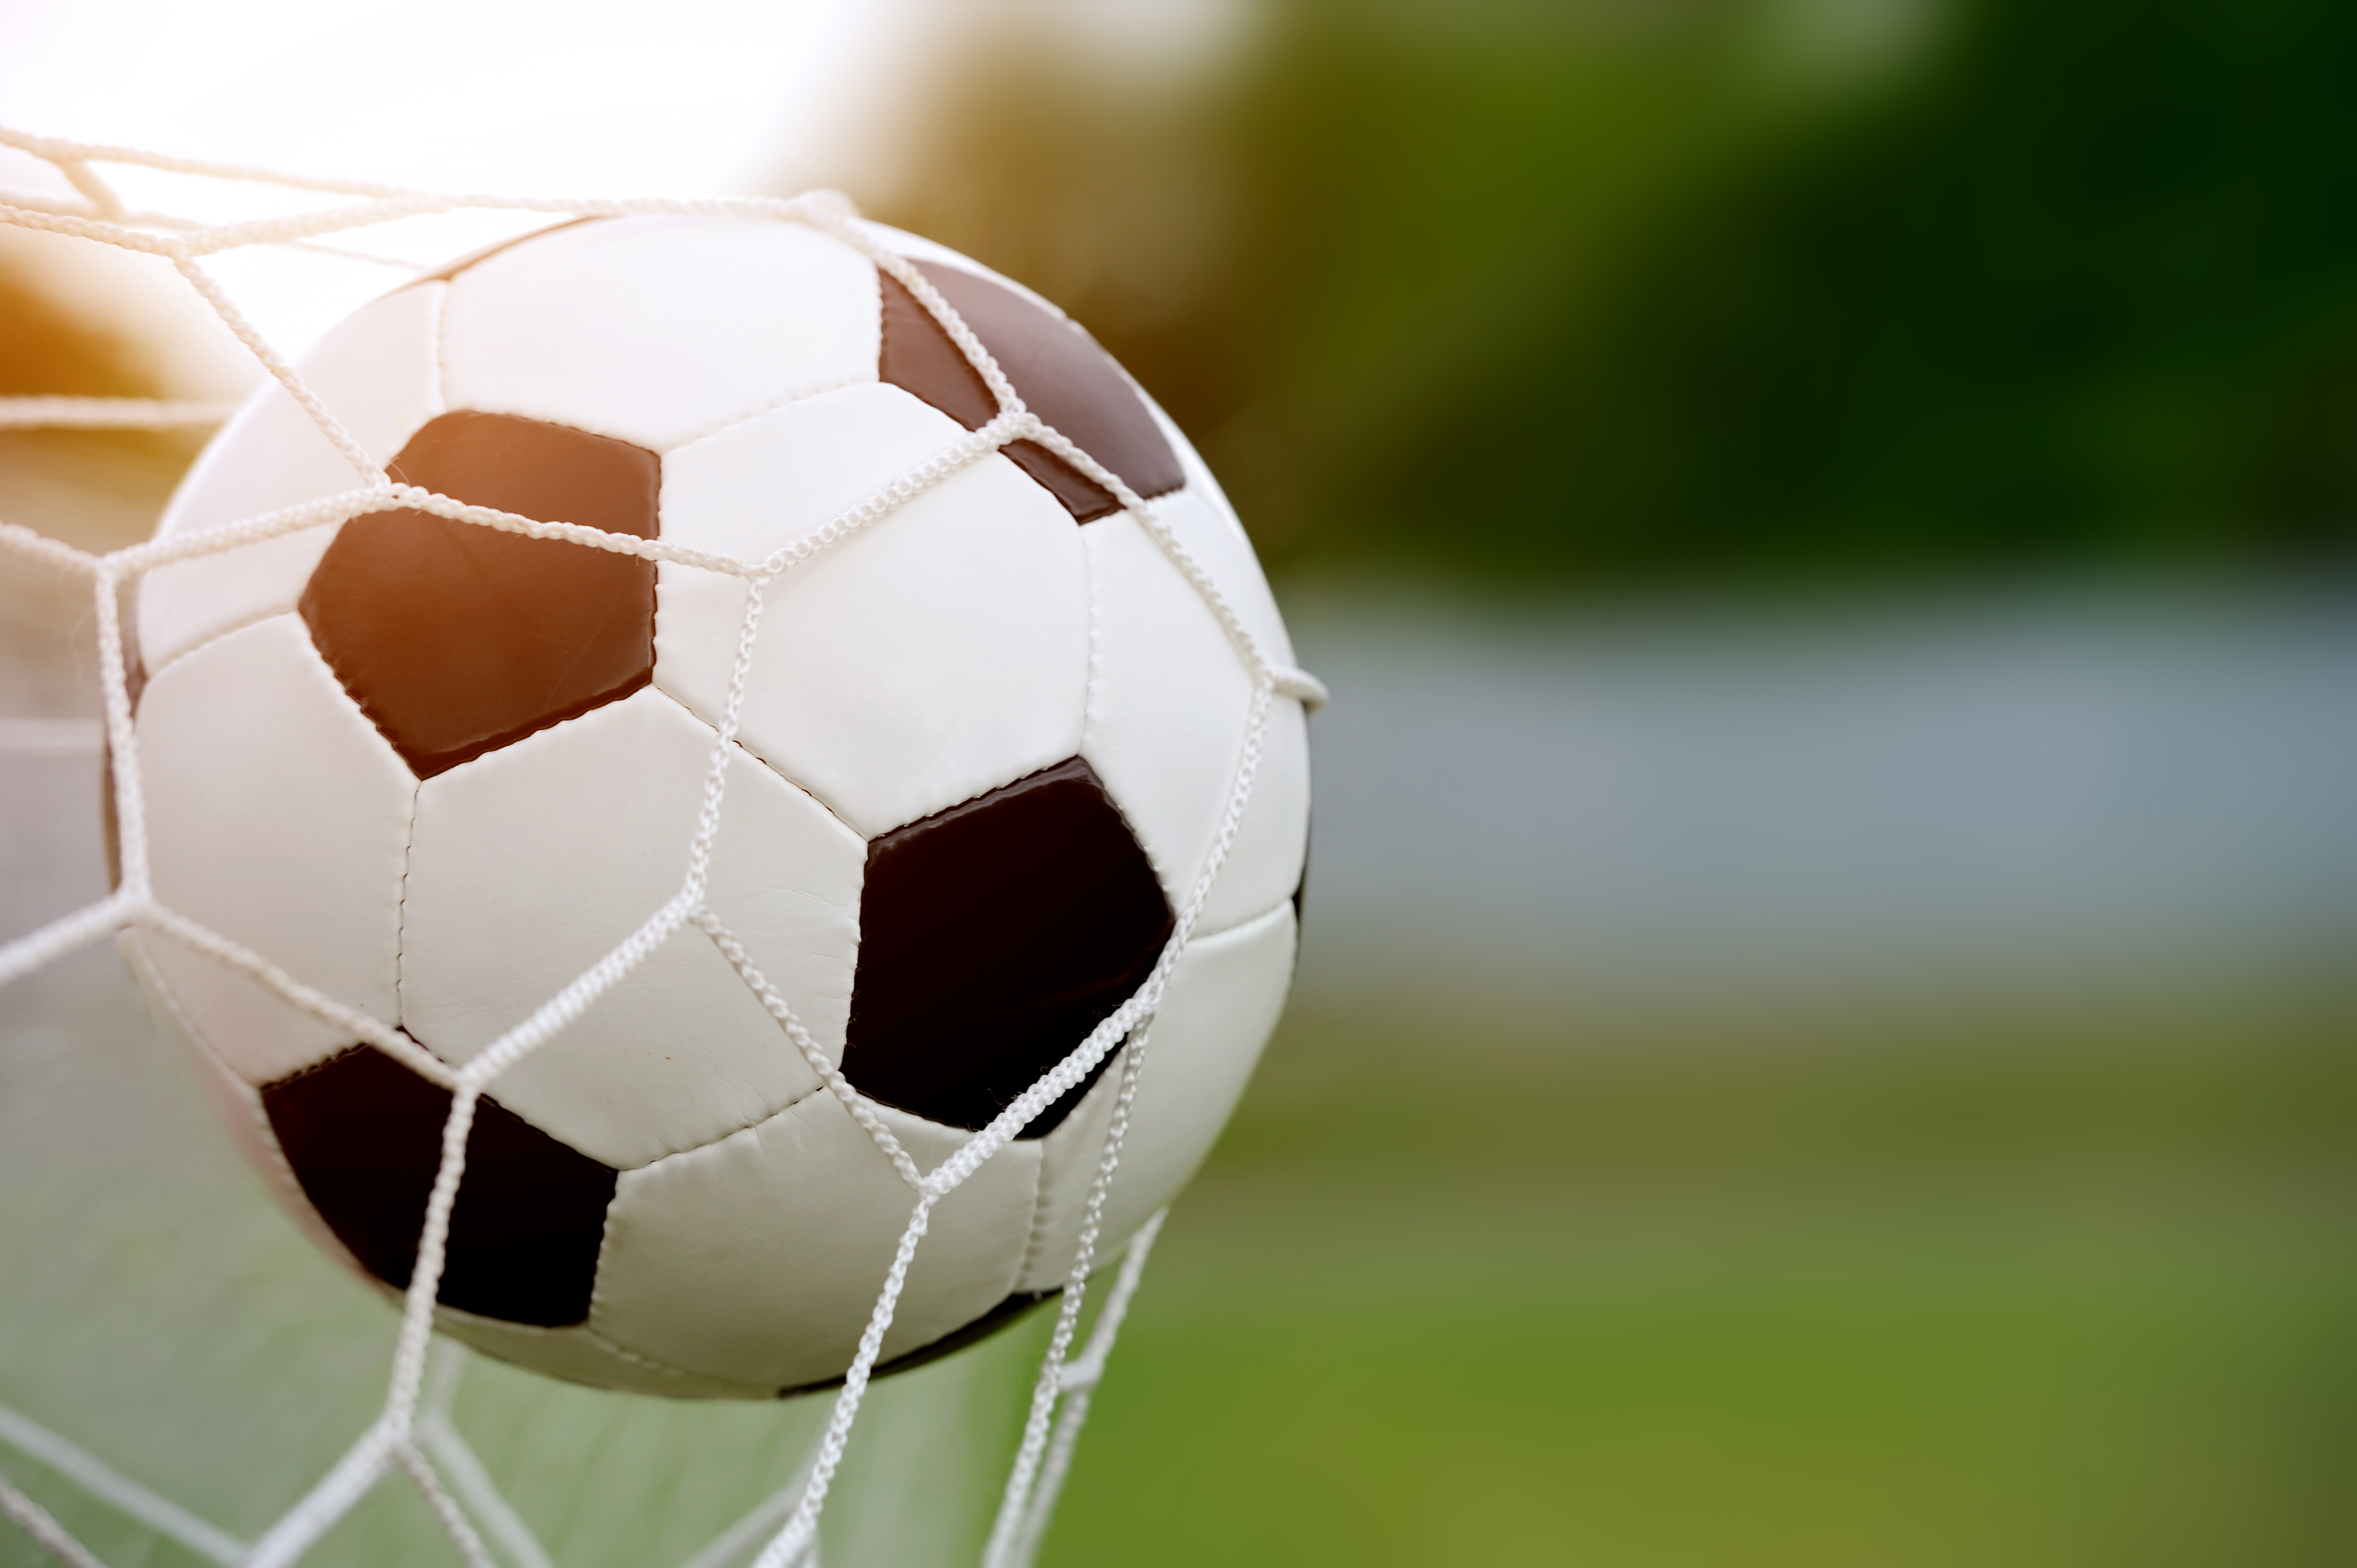 https://pt.depositphotos.com/50281457/stock-photo-soccer-ball-in-goal.html